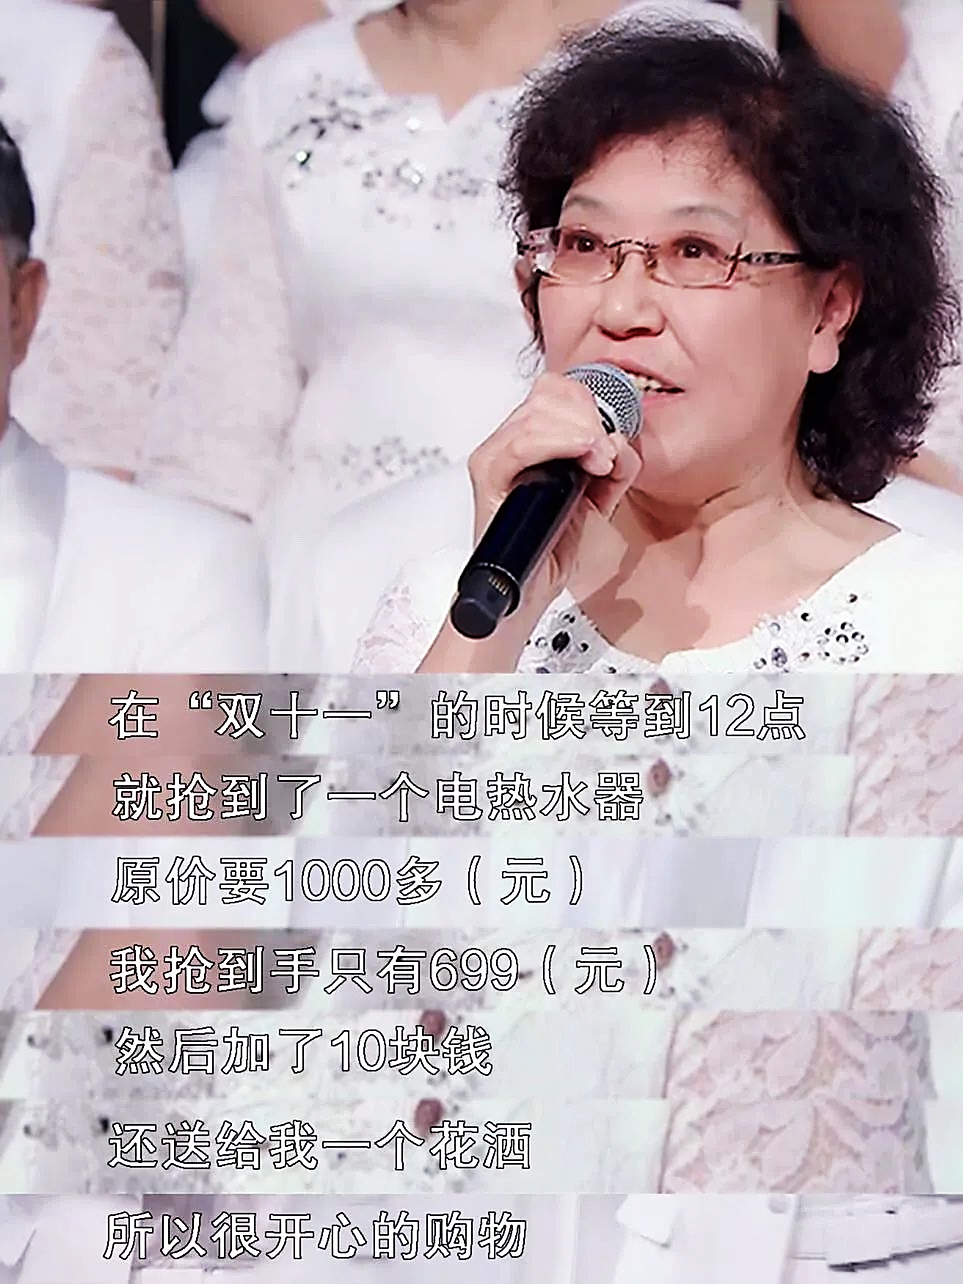 姜杭在《乐龄唱响》舞台